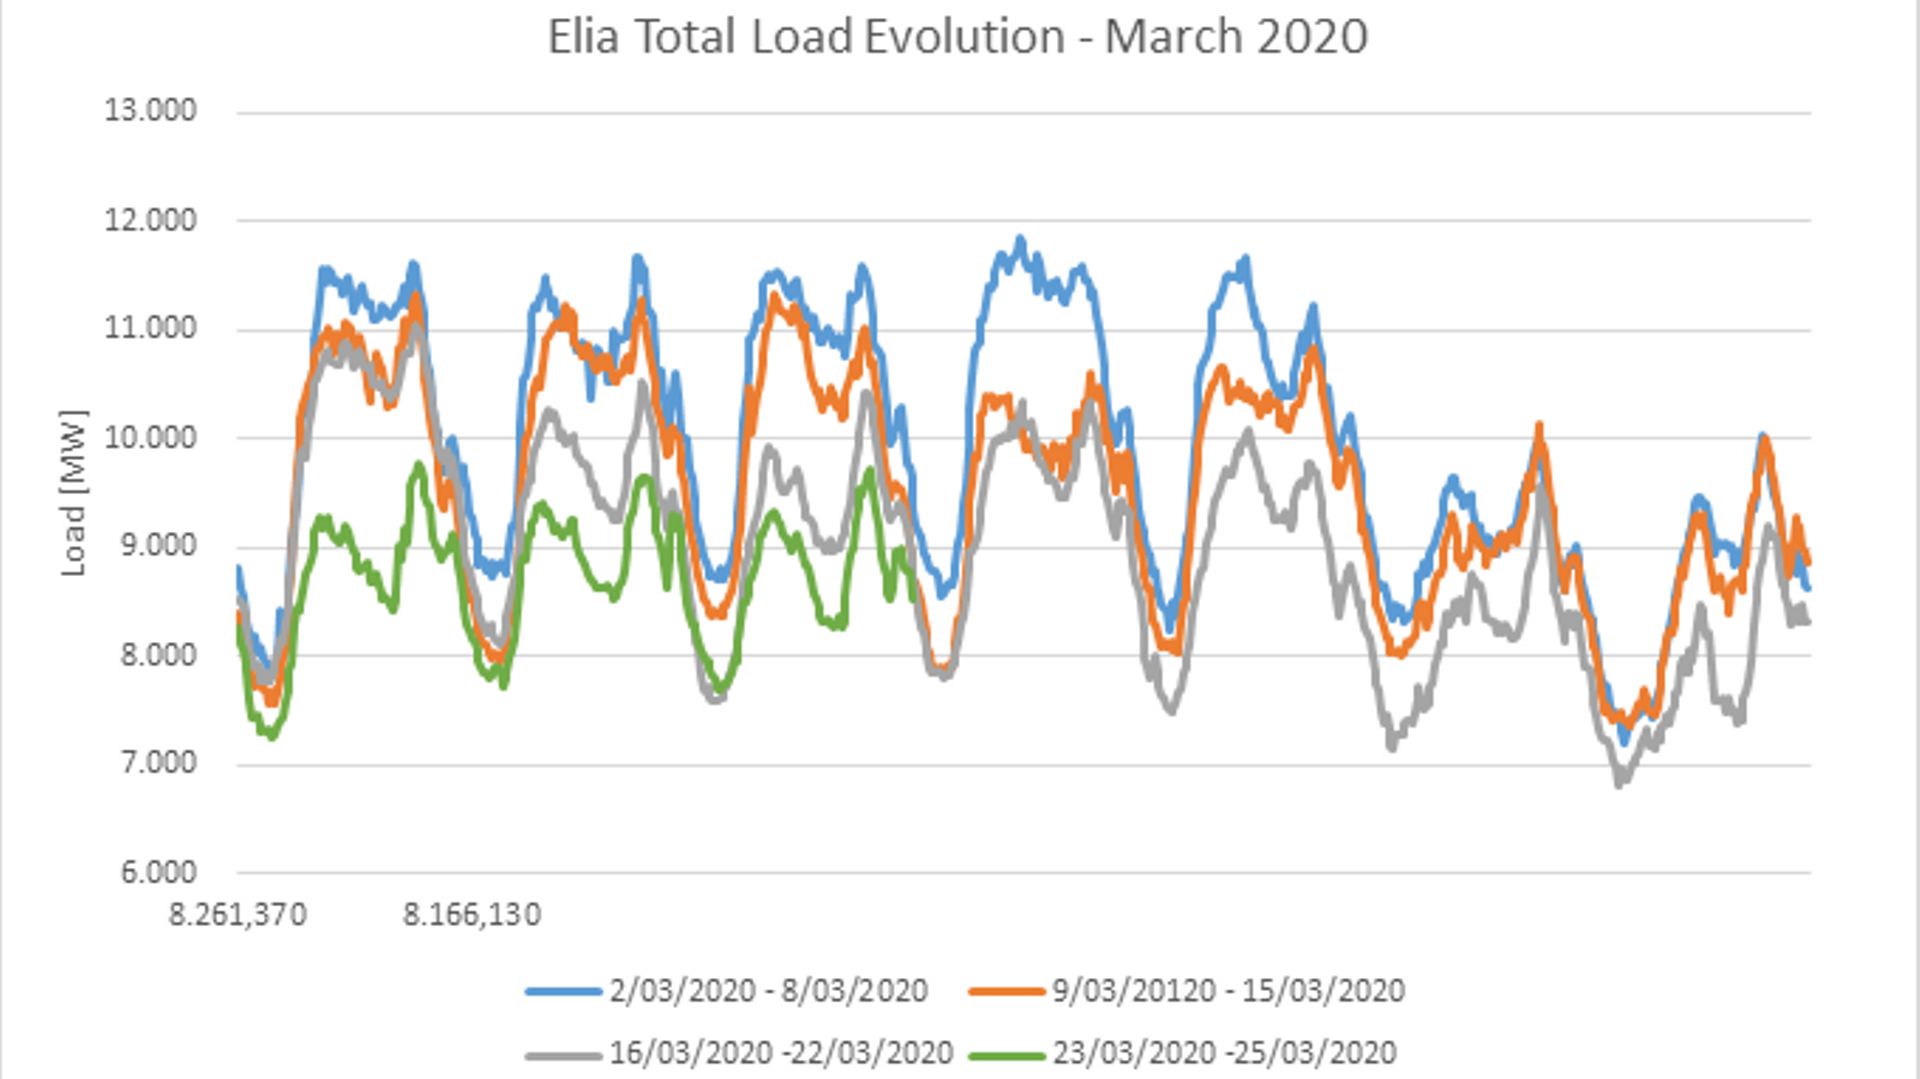 Evolution de la consommation d'électricité du lundi au vendredi, pour les quatre premières semaines de mars (différentes courbes)